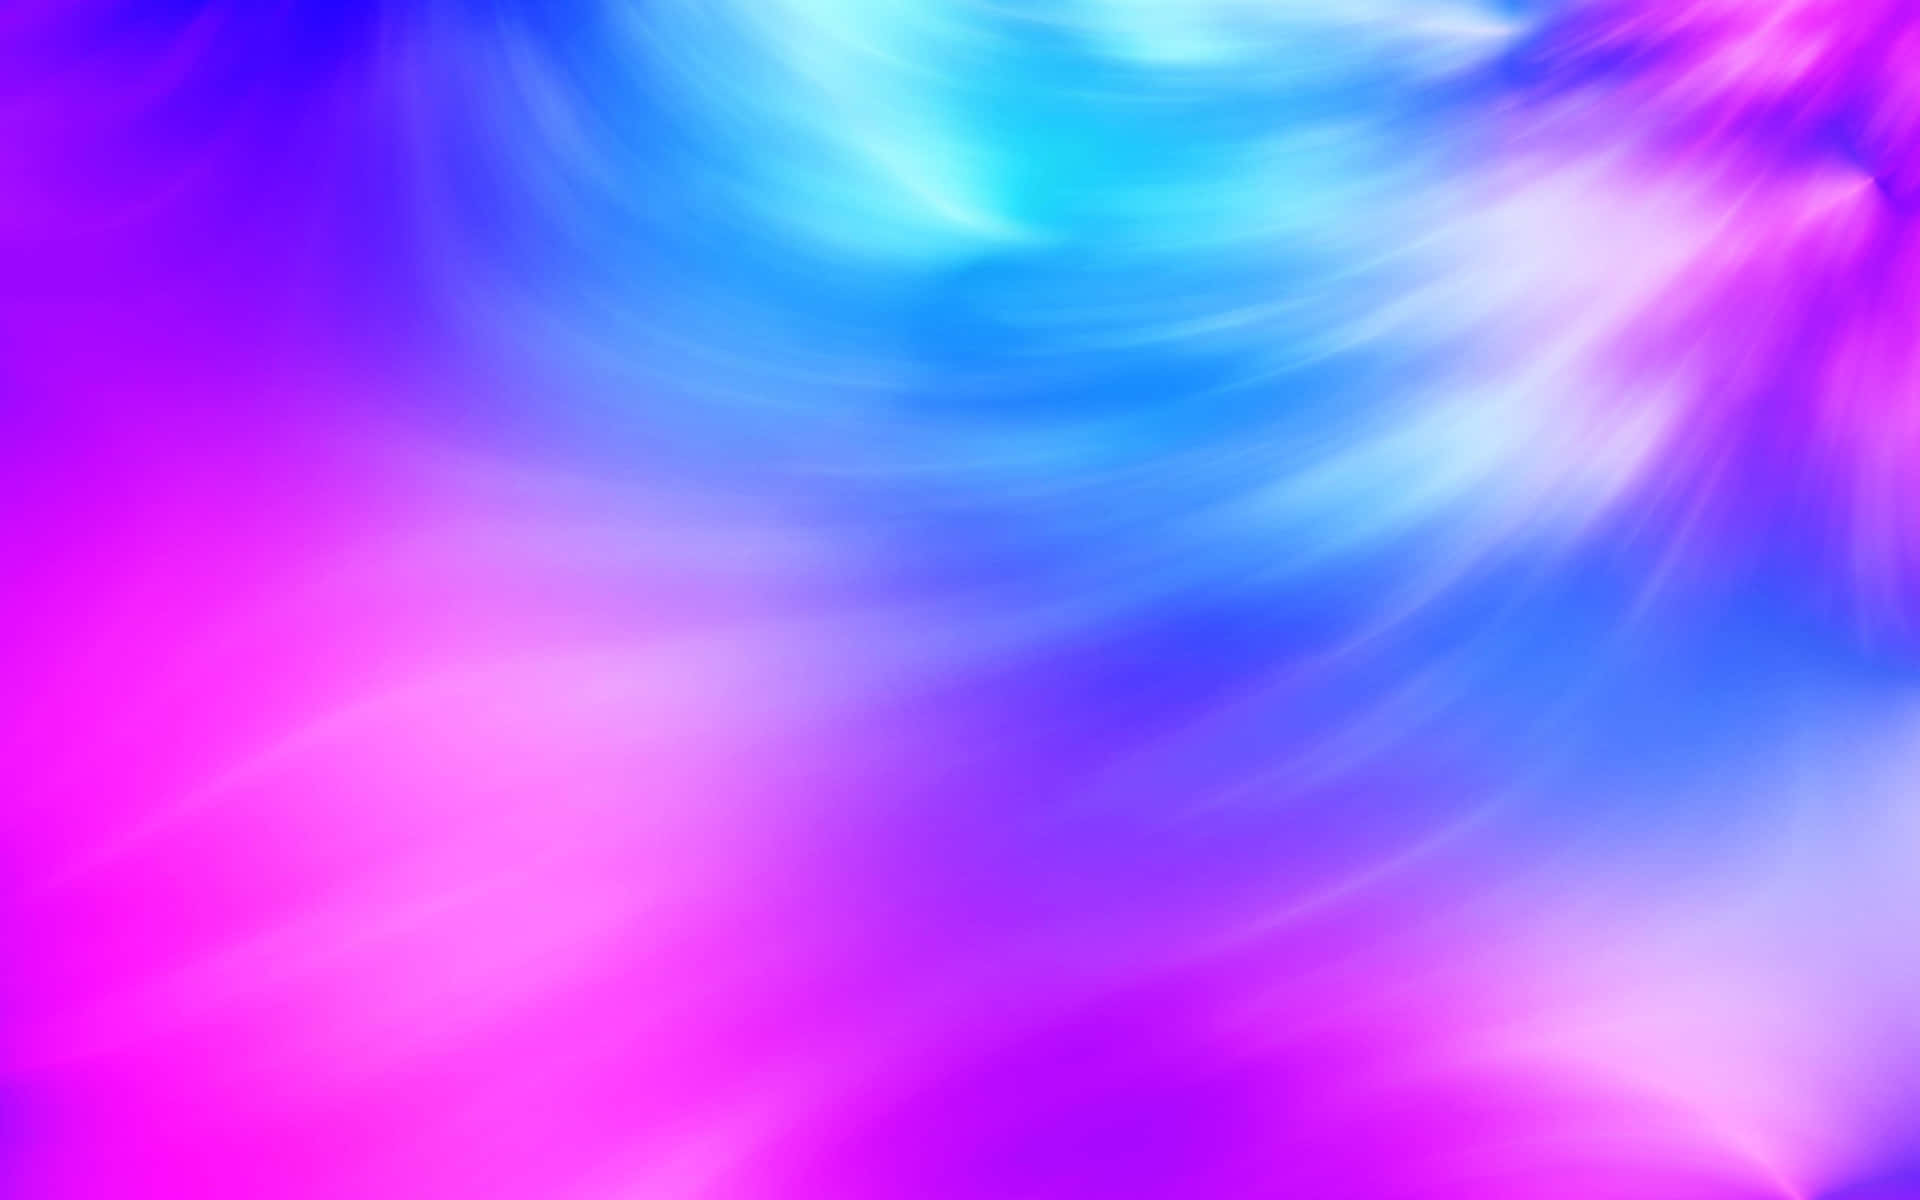 Swim in a sea of purple and blue ombre. Wallpaper